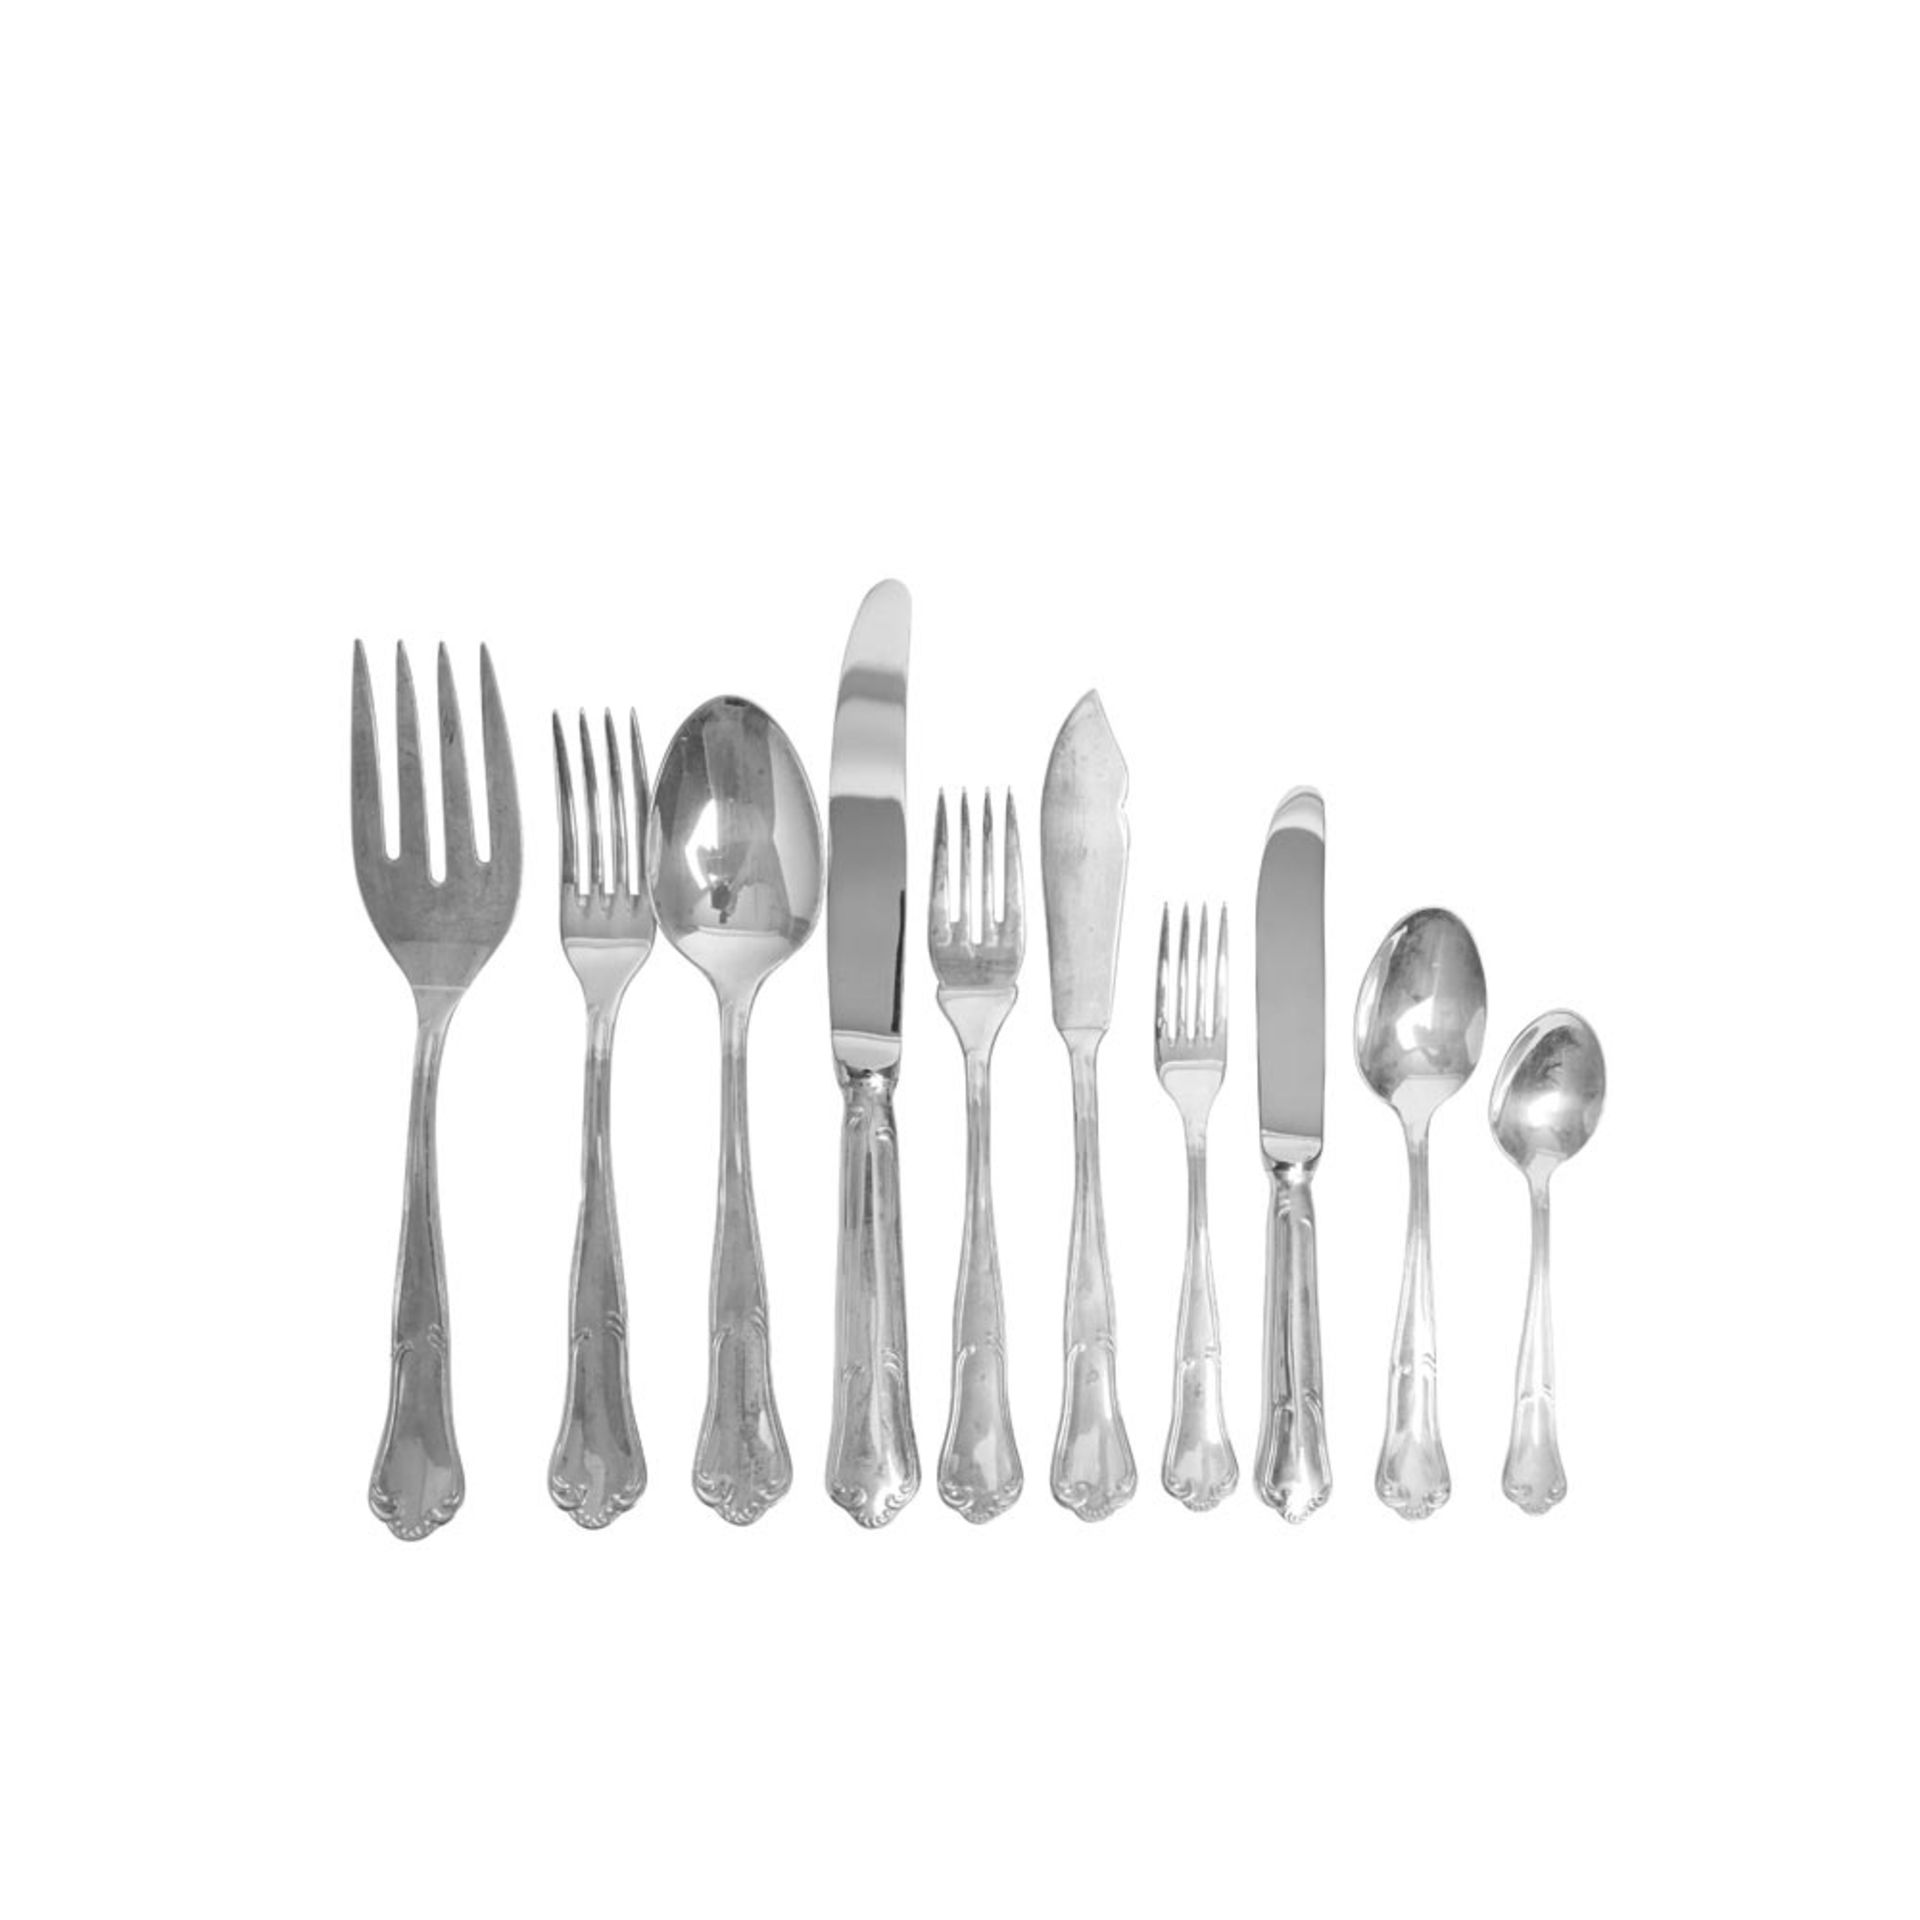 Cubertería en plata punzonada, segunda mitad del s.XX. Compuesta por doce tenedores, doce cucharas y